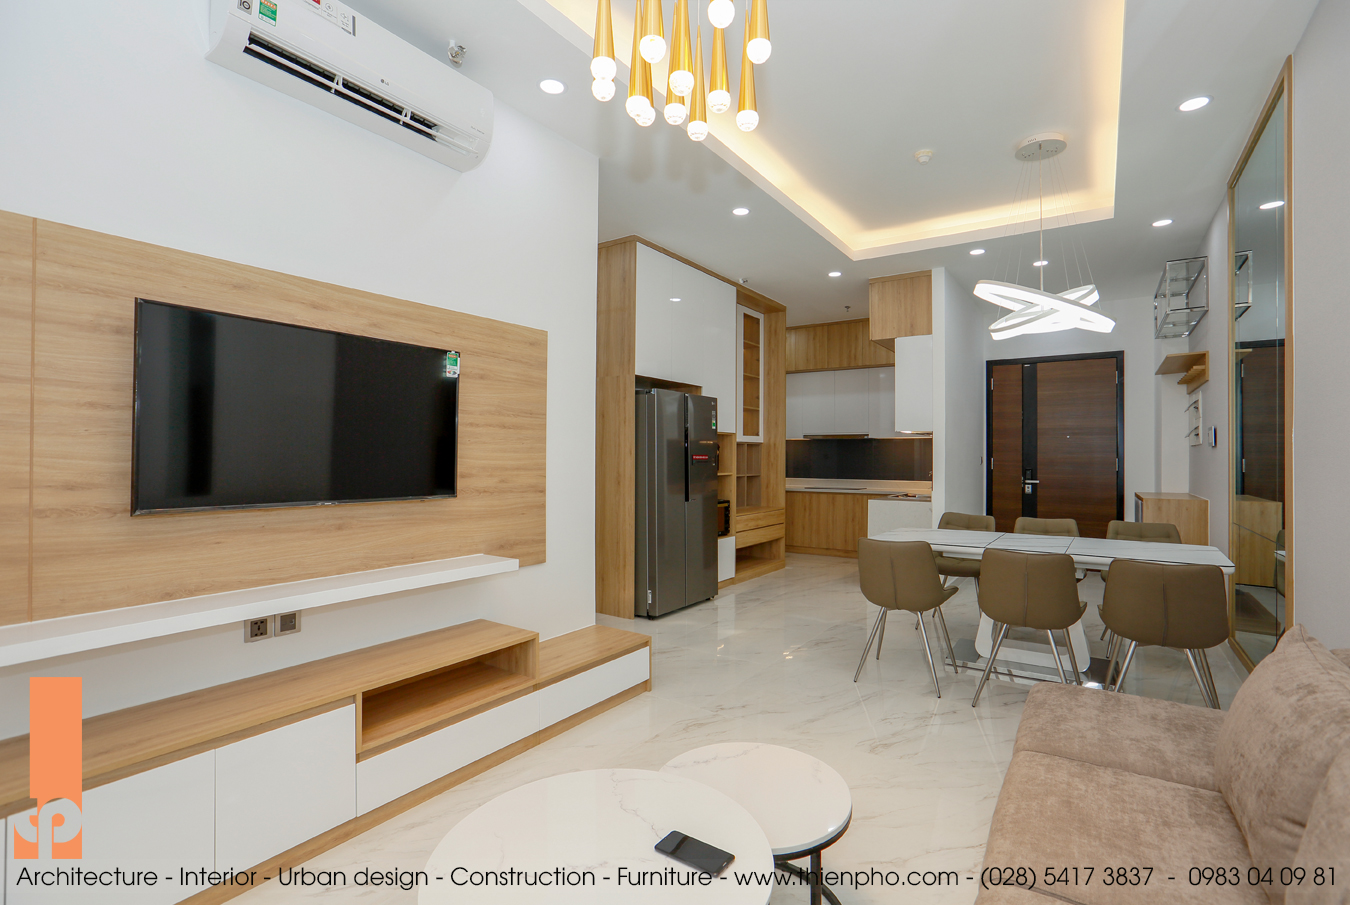 Hình ảnh thi công hoàn thiện nội thất căn hộ A4-03 Midtown, Phú Mỹ Hưng